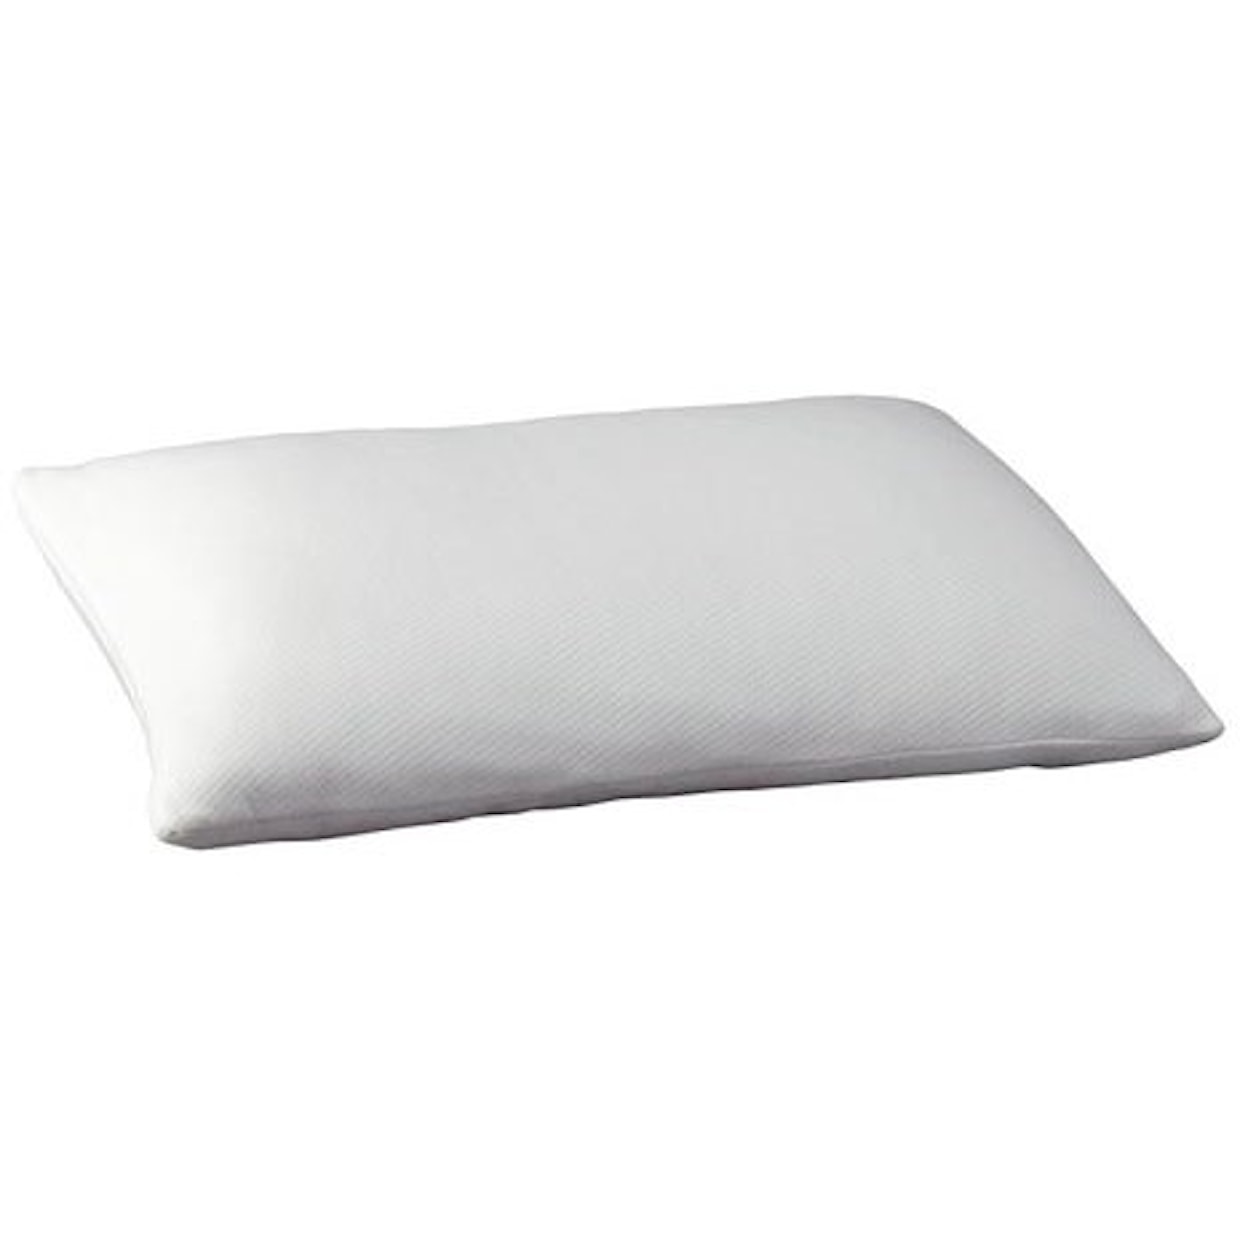 Sierra Sleep M82510 Memory Foam Pillow